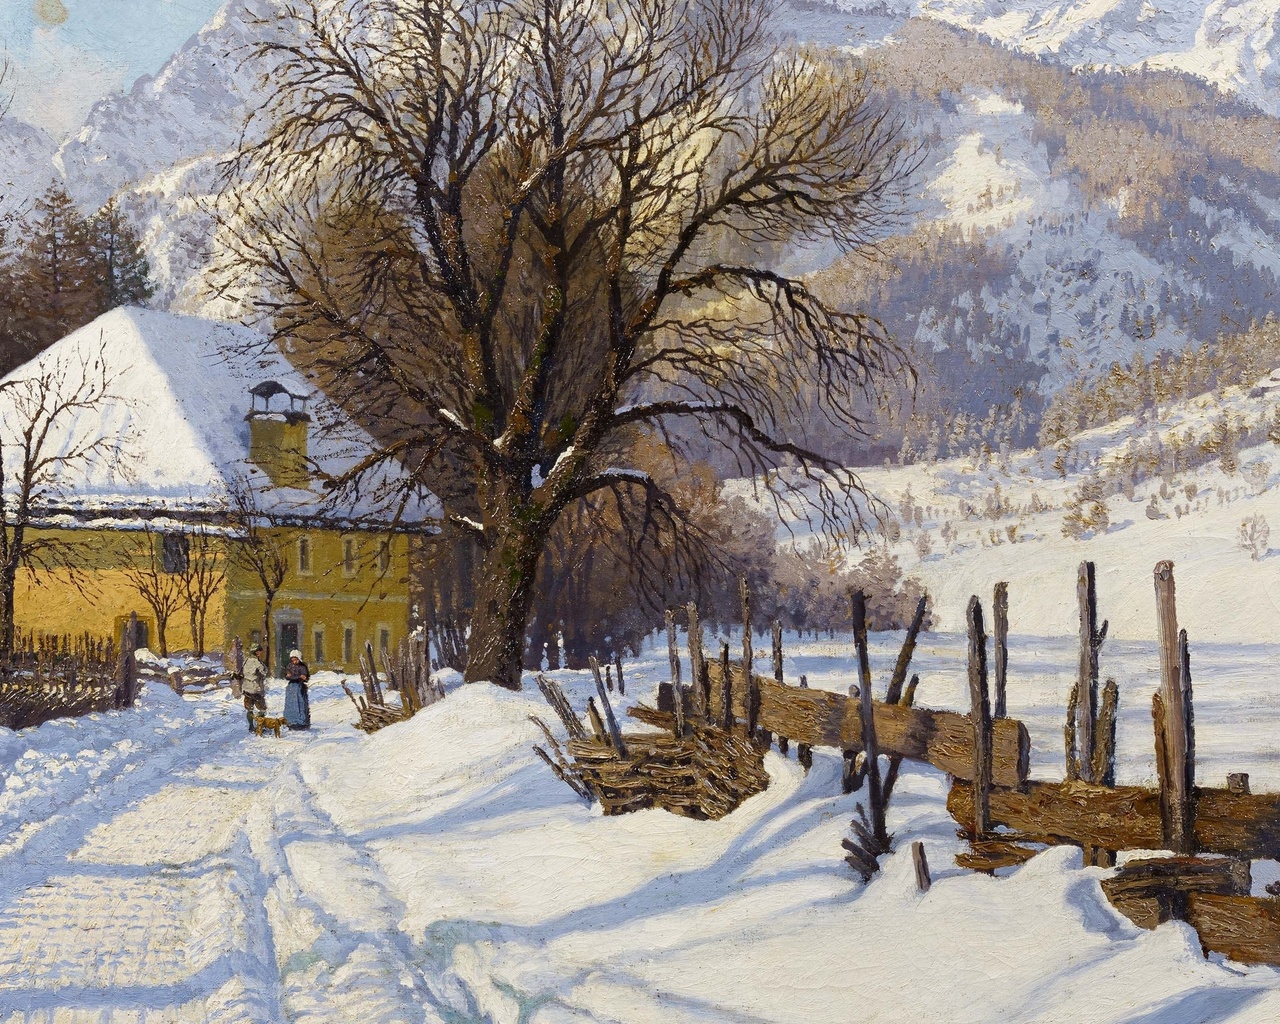 hans ranzoni the elder, austrian, 1920, farm in a sunny winter landscape